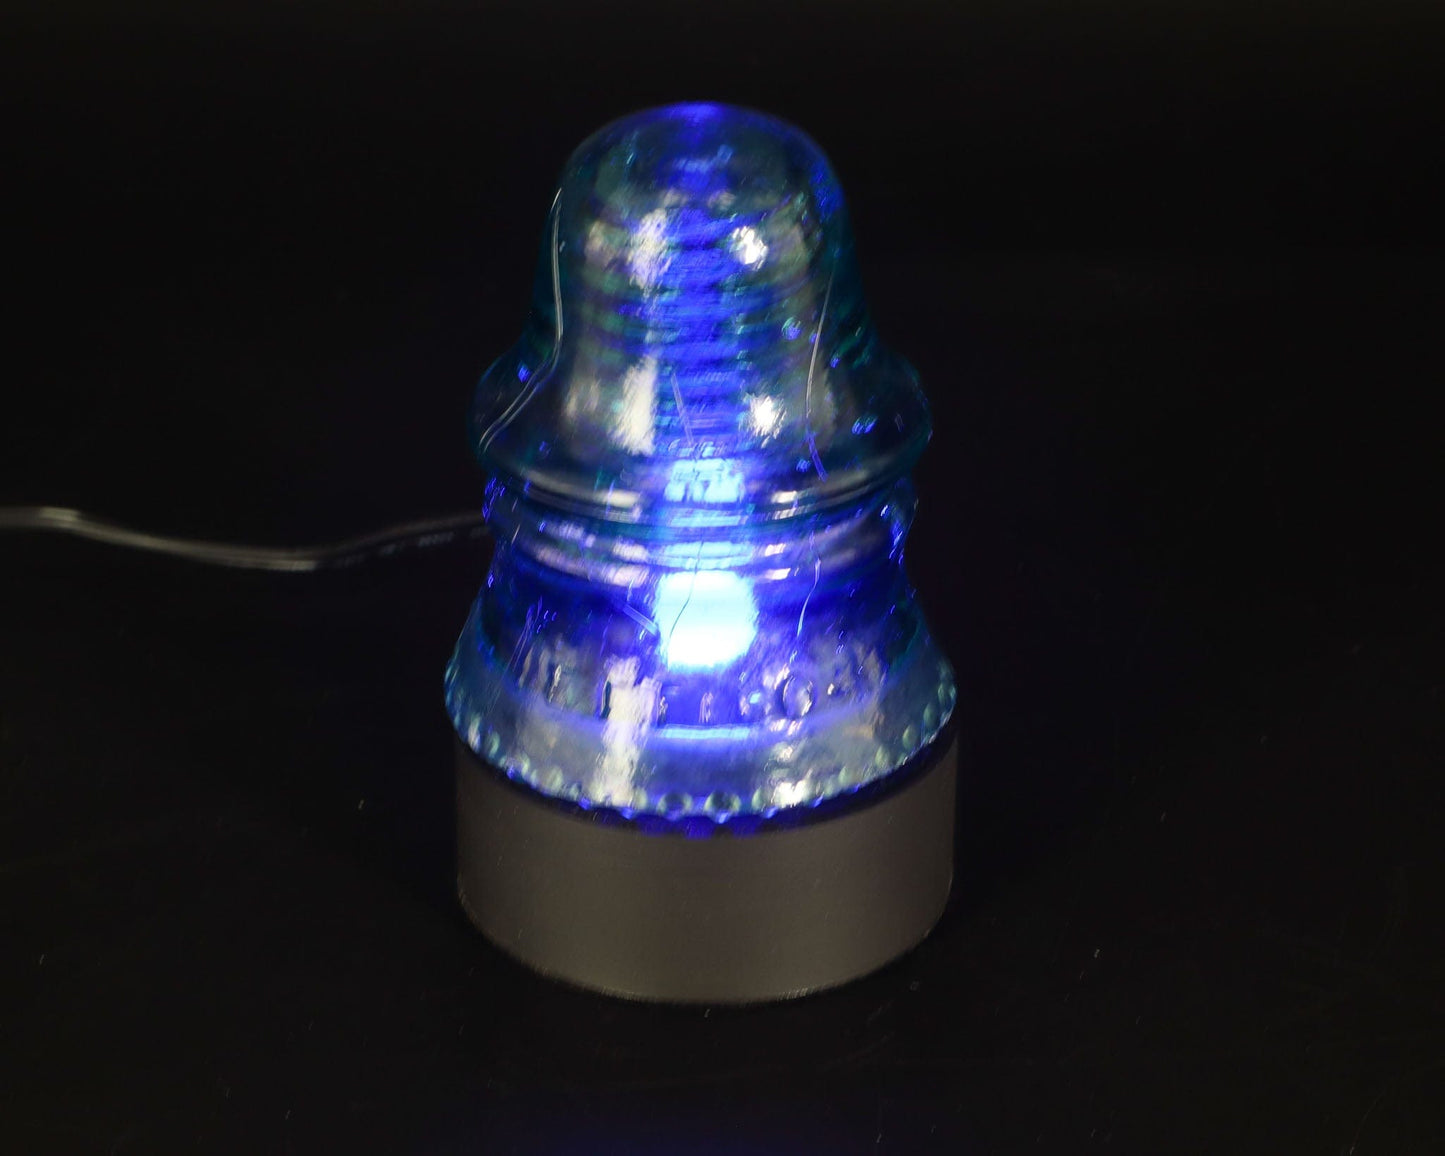 LightAndTimeArt Lamp base Lamp Base for "Hemingray-22 CD-151" Glass Insulators, Industrial Lighting, Man Cave Decor